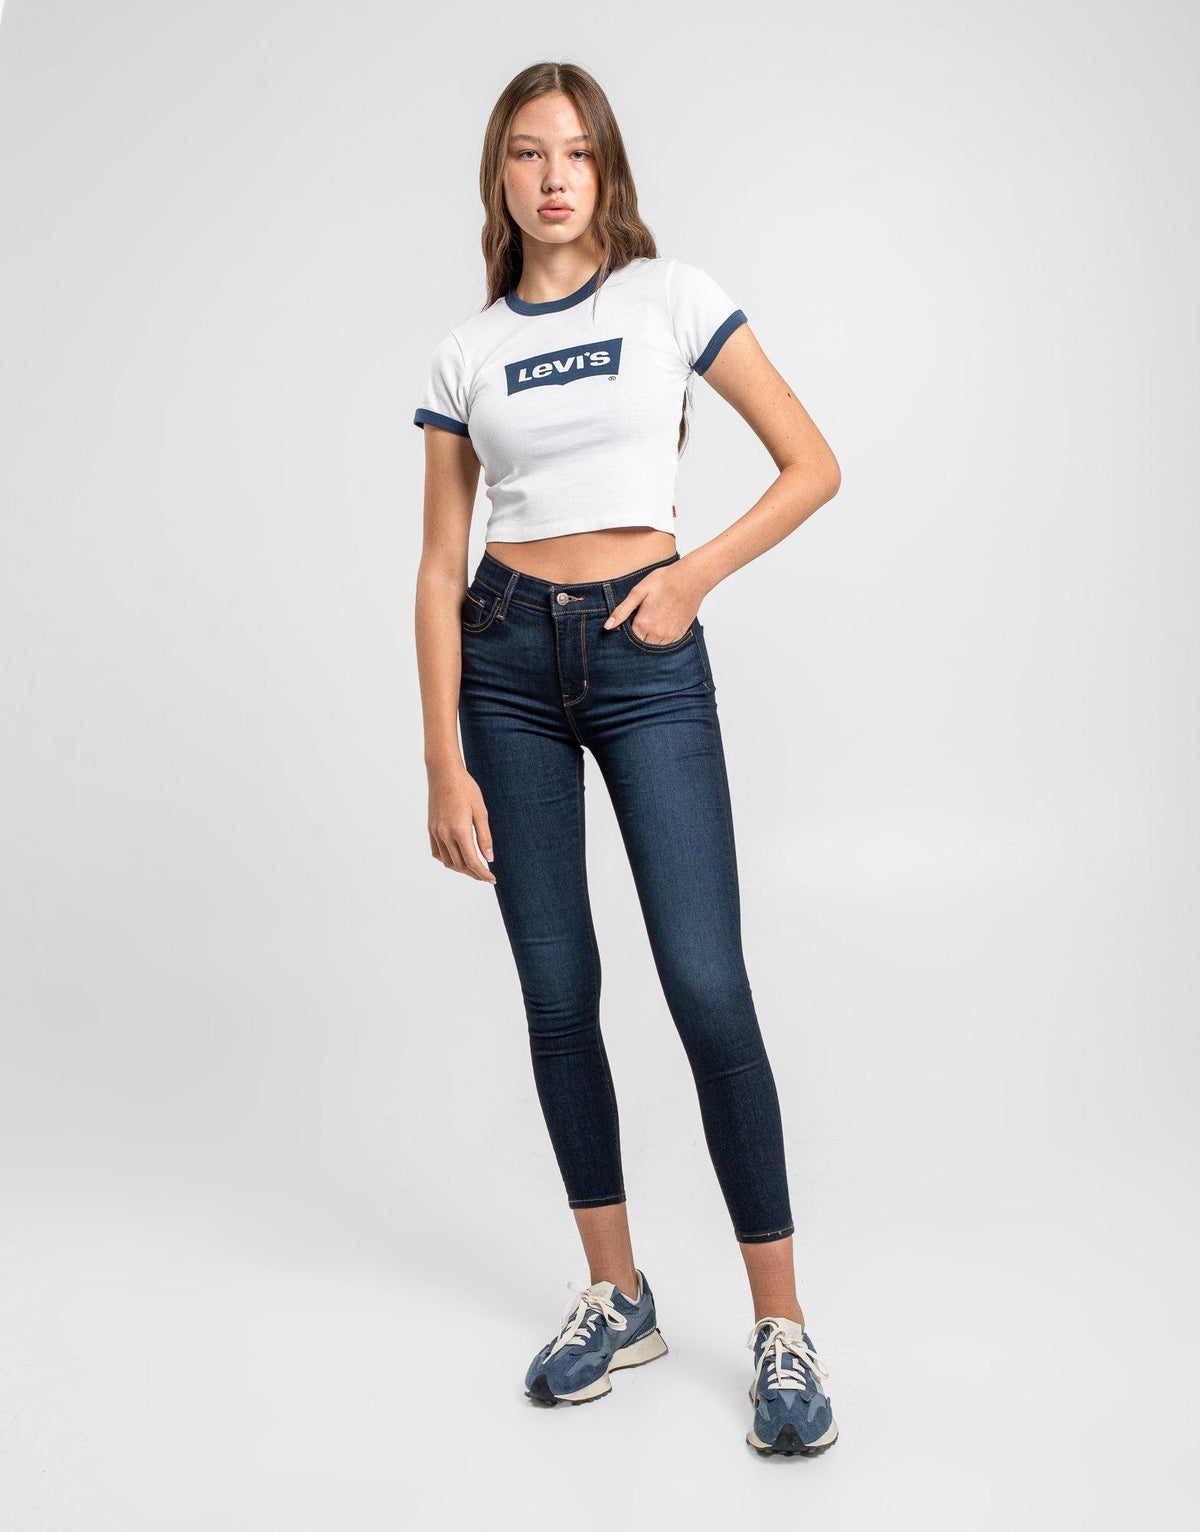 ג'ינס סופר סקיני בגזרה גבוהה 720 | נשים